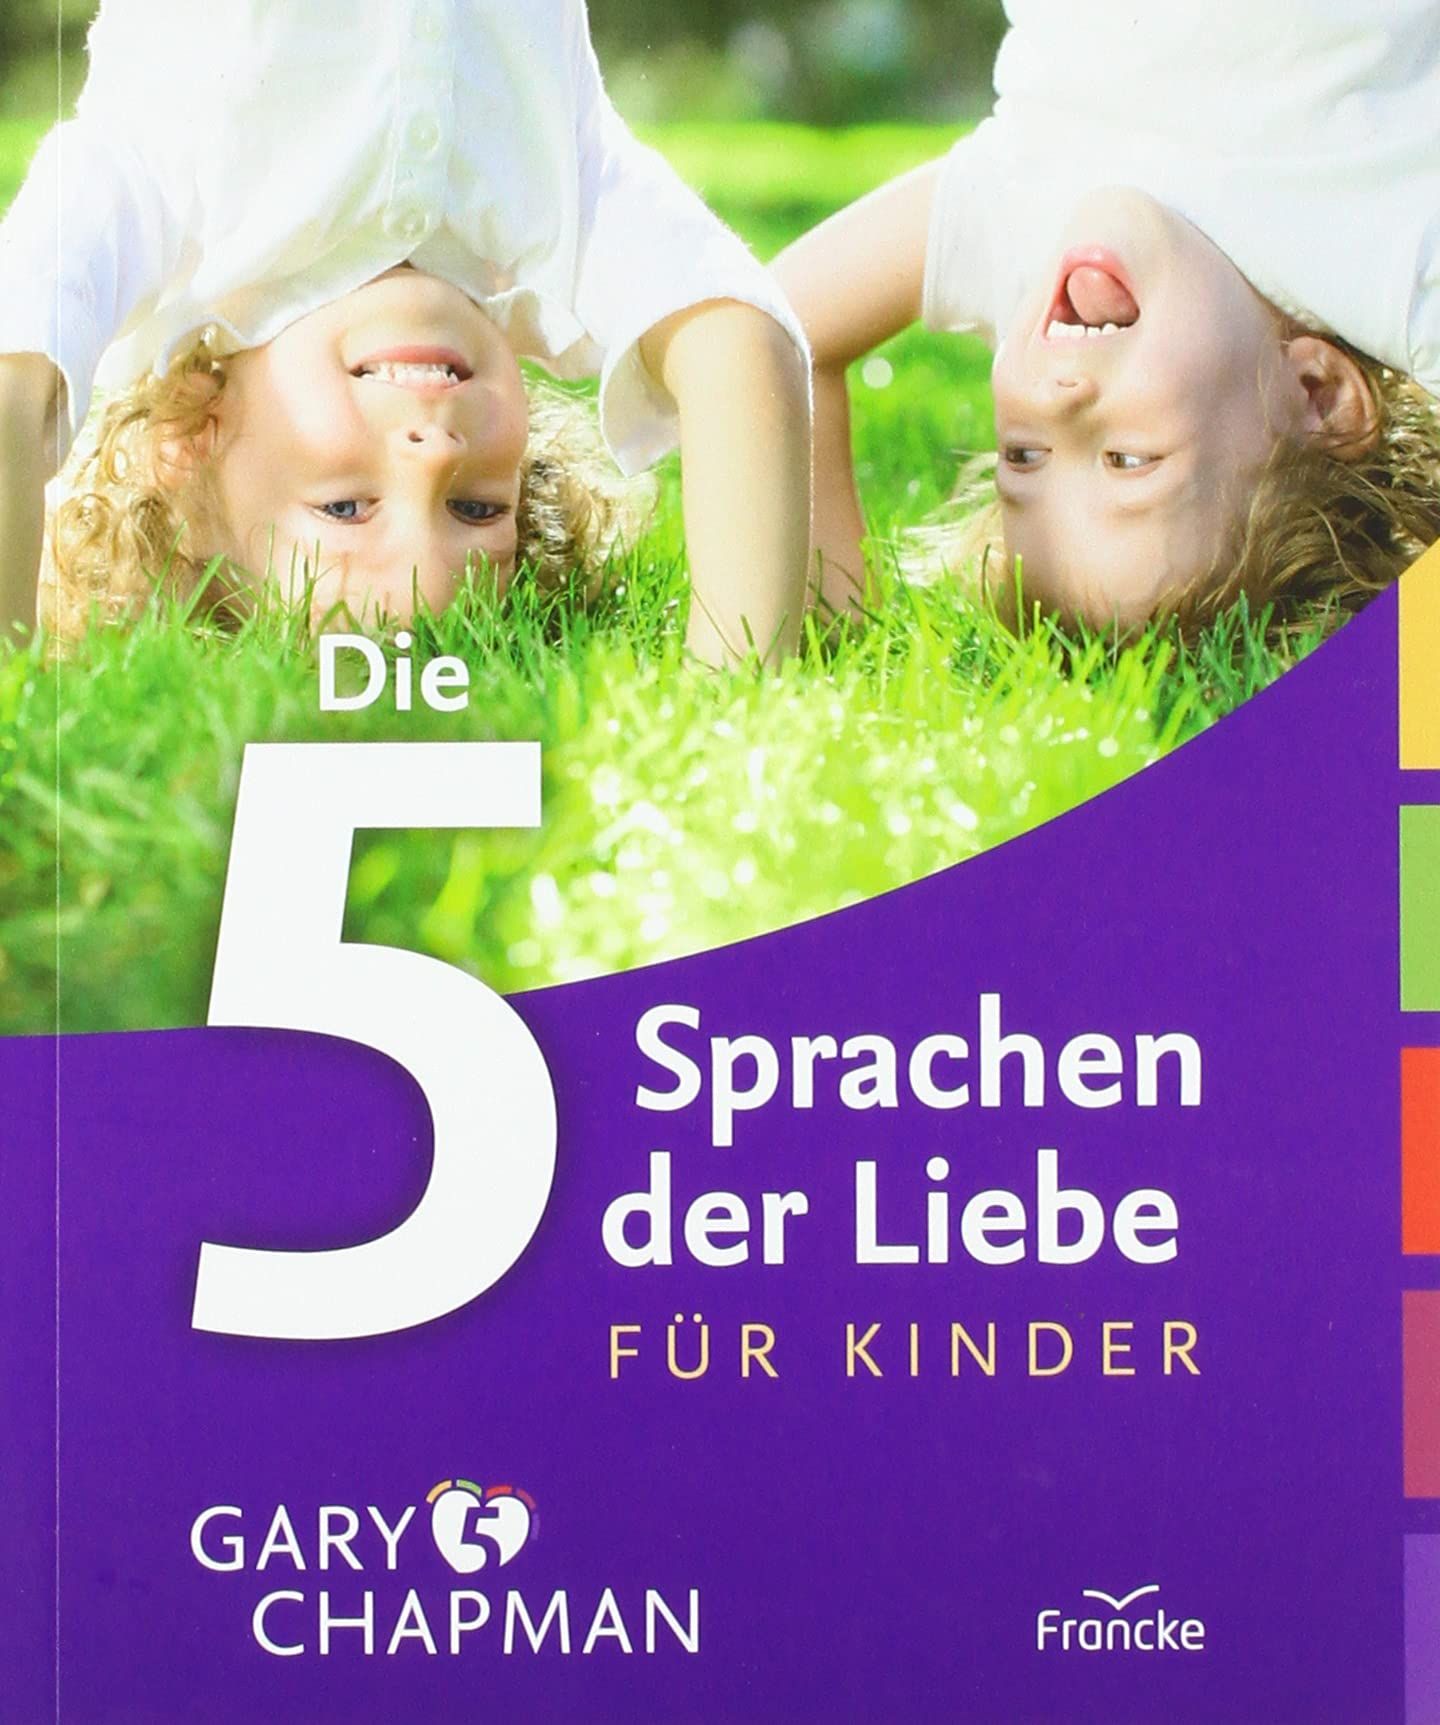 Gary Chapman: Die 5 Sprachen der Liebe für Kinder